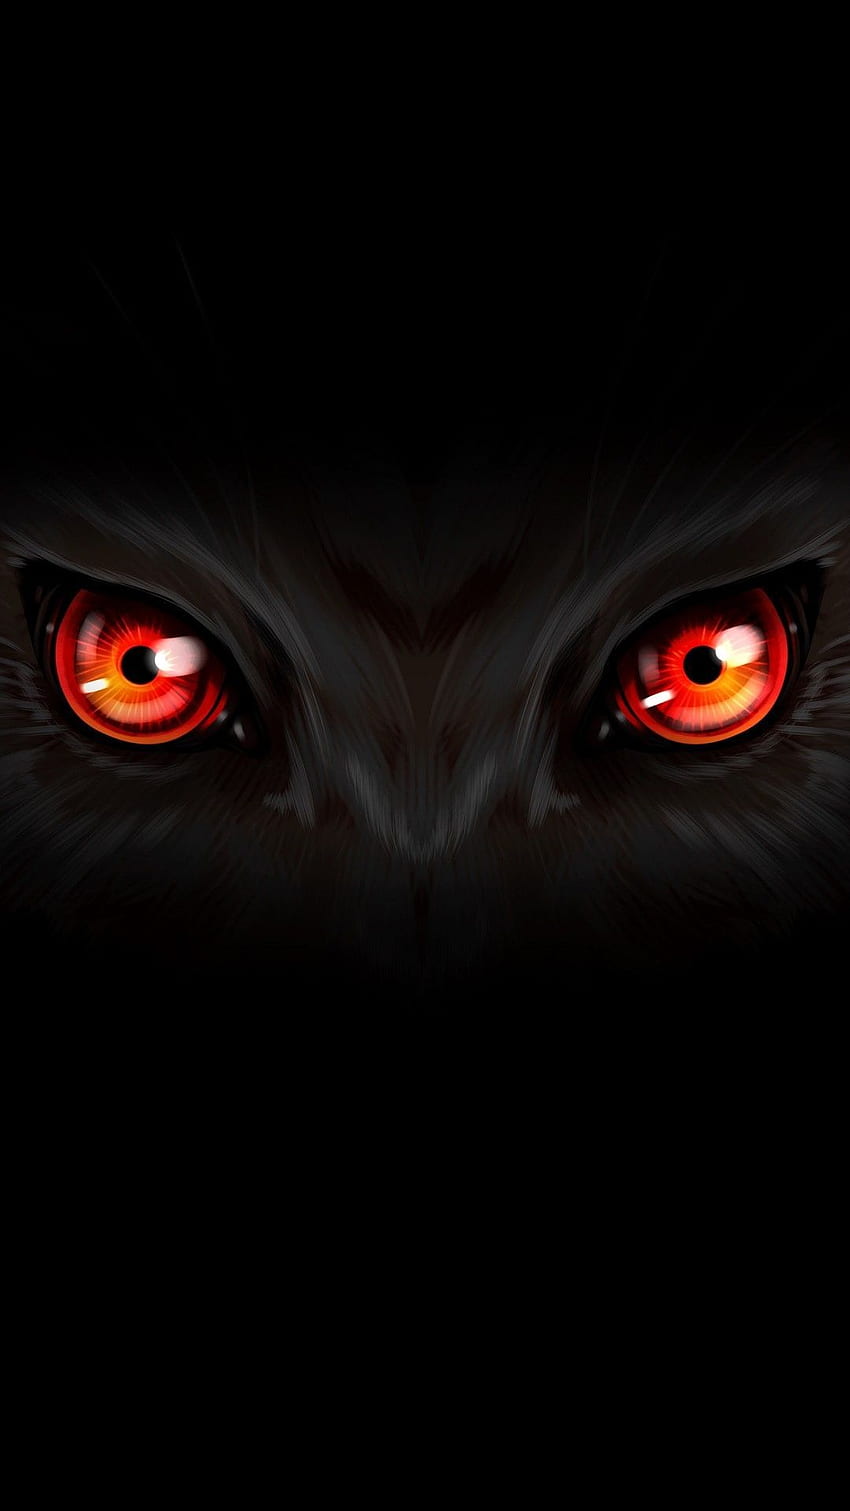 MuchaTseBle im Jahr 2019. Augen, Wolfsaugen, dunkler, schwarzer Wolf mit roten Augen HD-Handy-Hintergrundbild